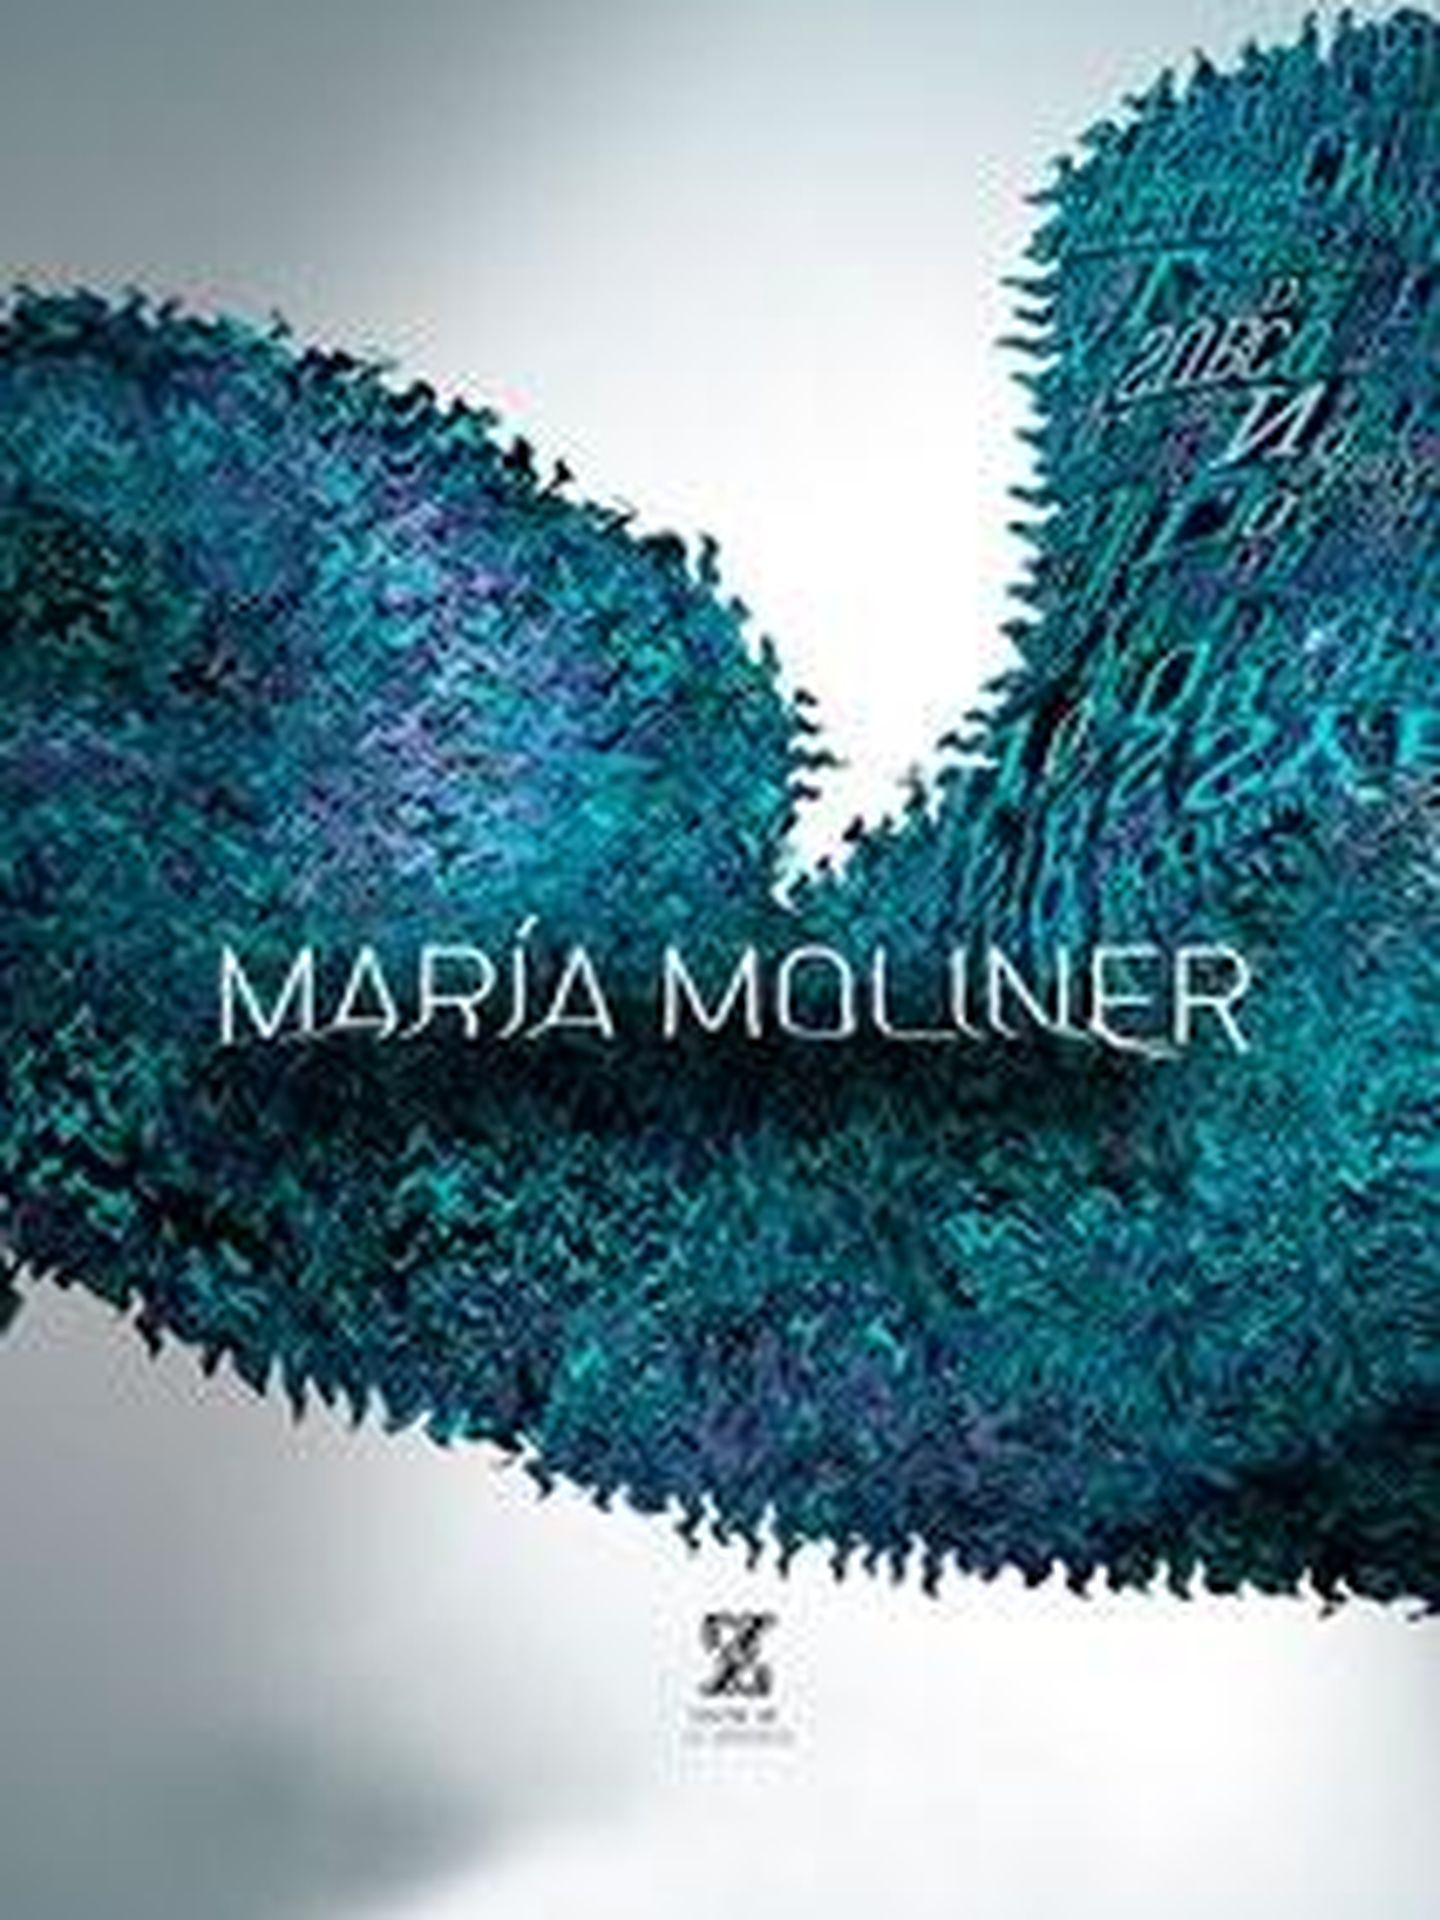 El estreno mundial de 'María Moliner' será en abril en el Teatro de la Zarzuela